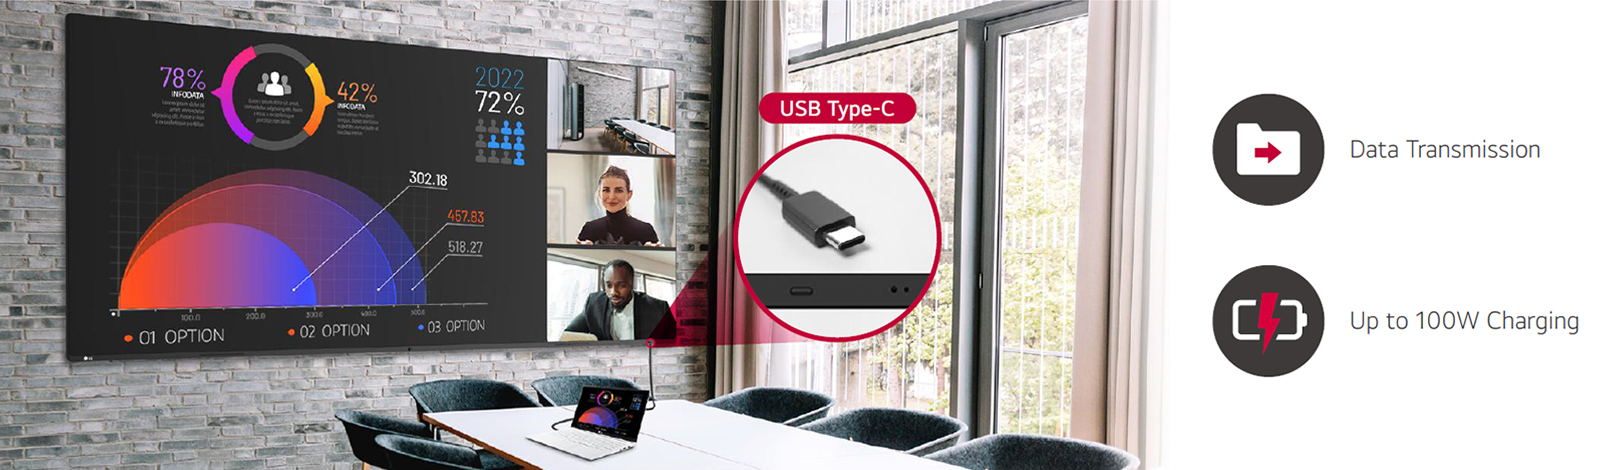 Facile connessione e ricarica USB di tipo C